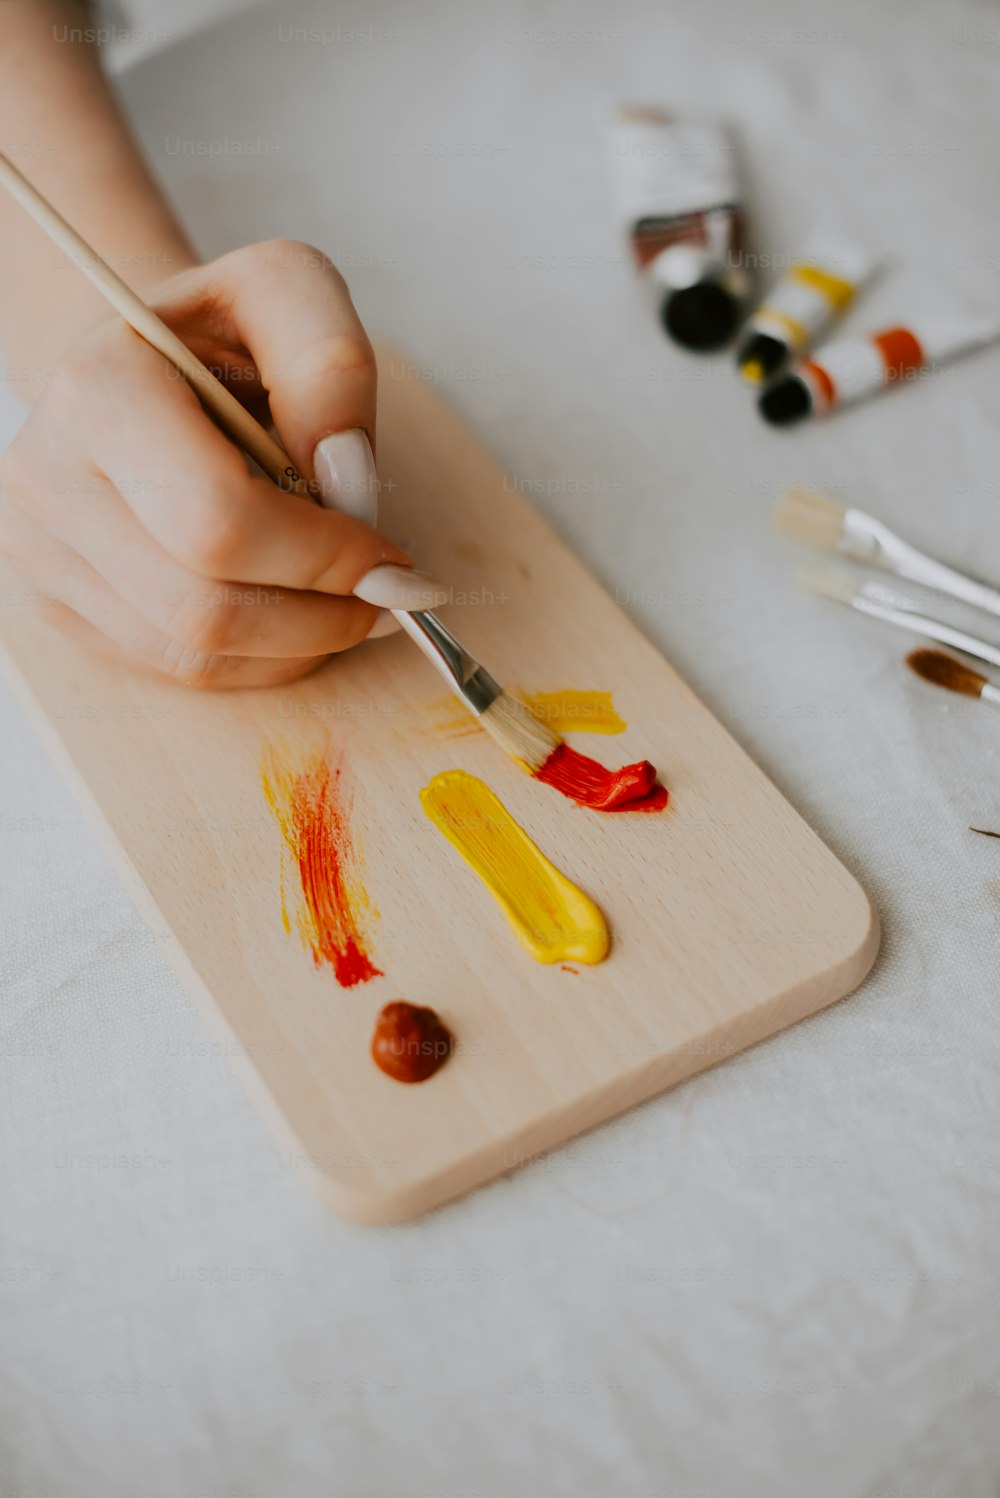 Una persona está pintando en una tabla de madera